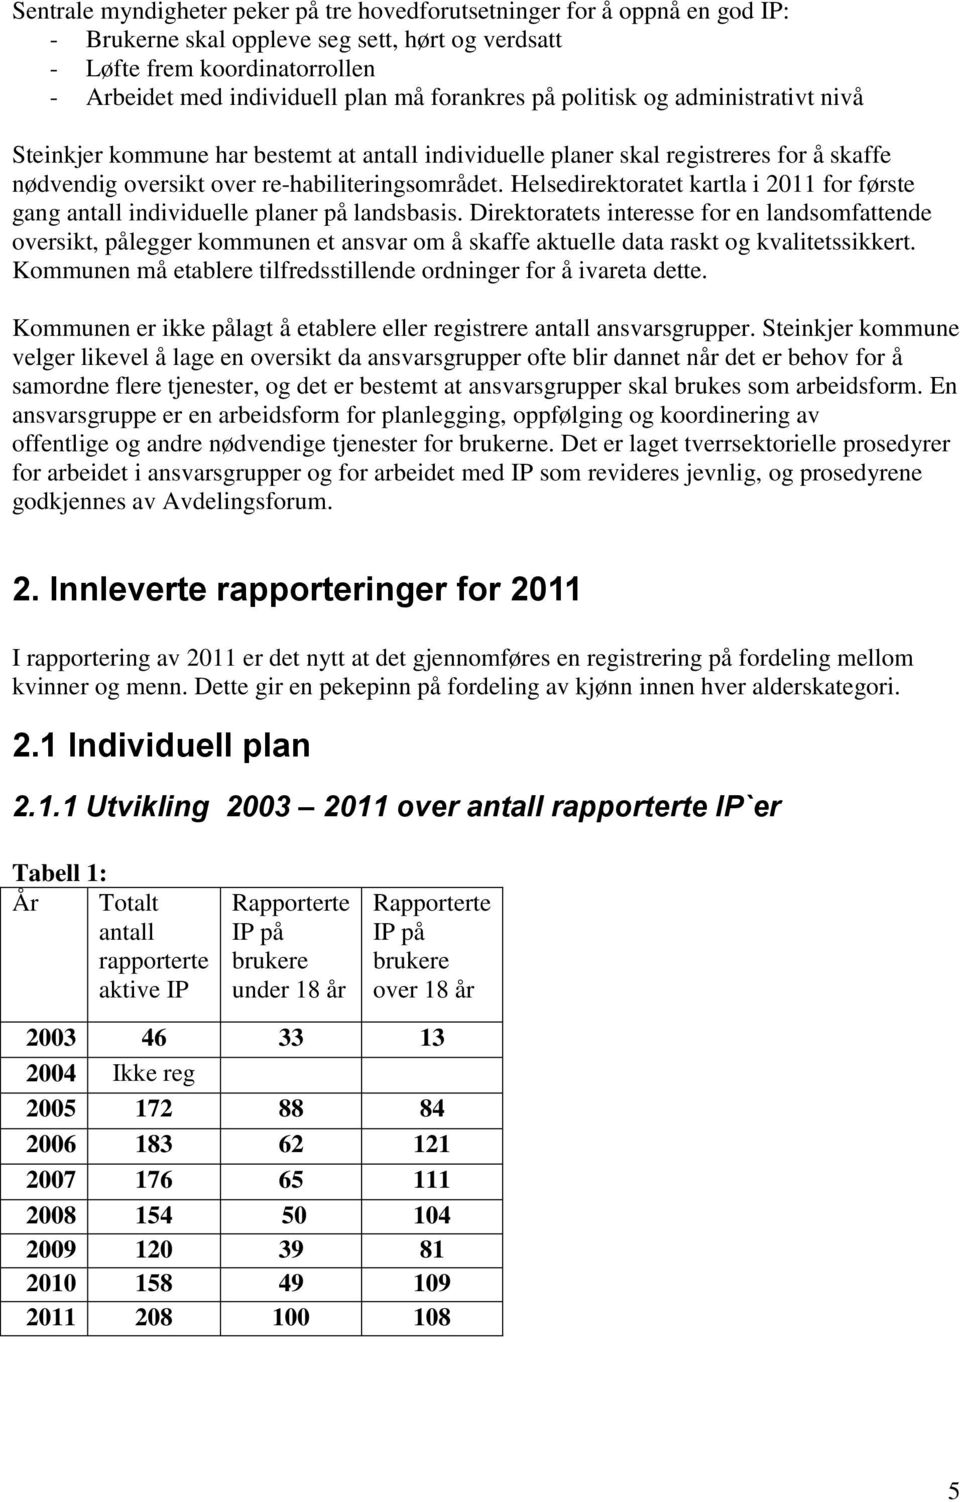 Helsedirektoratet kartla i 2011 for første gang antall individuelle planer på landsbasis.